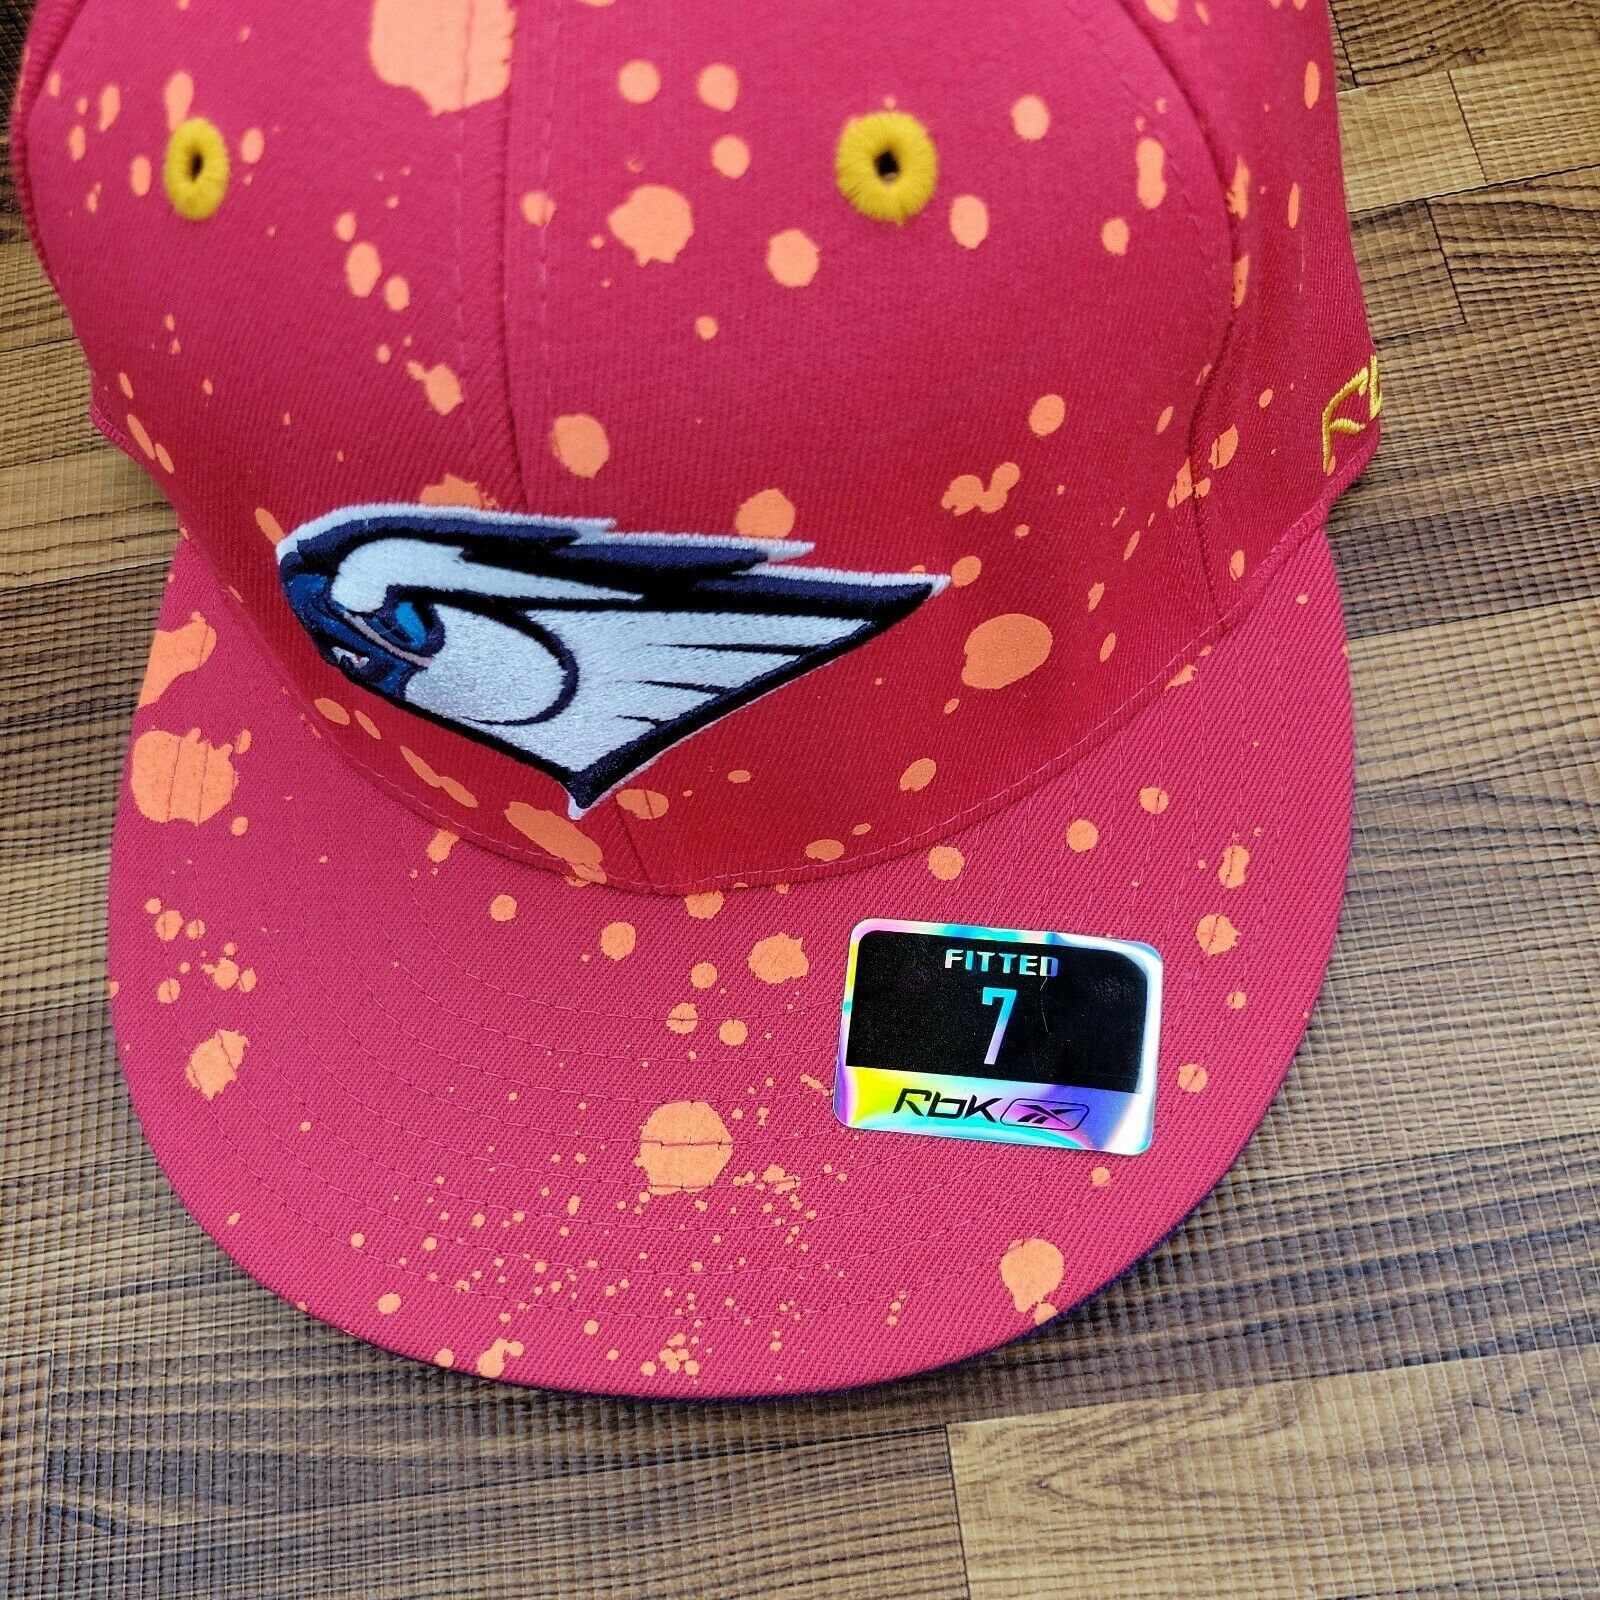 Reebok Atlanta Hawks Hat Size 7 Fitted Reebok Splatter Pattern Size ONE SIZE - 2 Preview